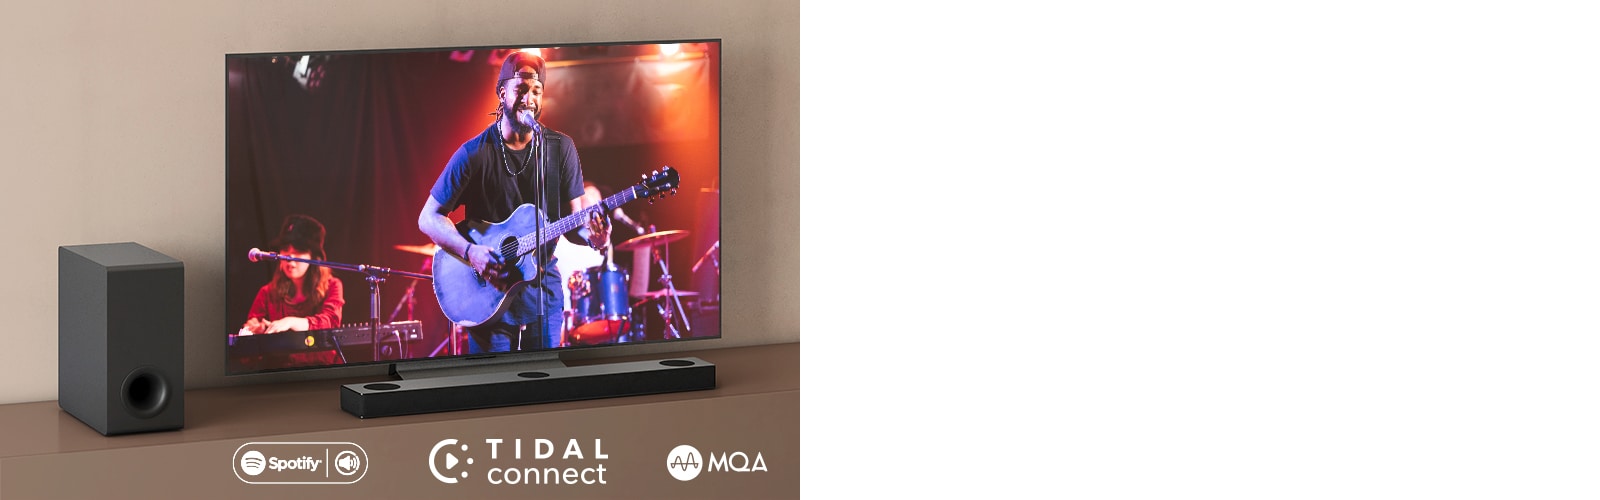 Телевизор LG е поставен на кафяв рафт, саундбар S80QY на LG е поставен пред телевизора. Субуфер е поставен от лявата страна на телевизора. Телевизор показва концертна сцена. В горния ляв ъгъл е показано обозначението НОВО.